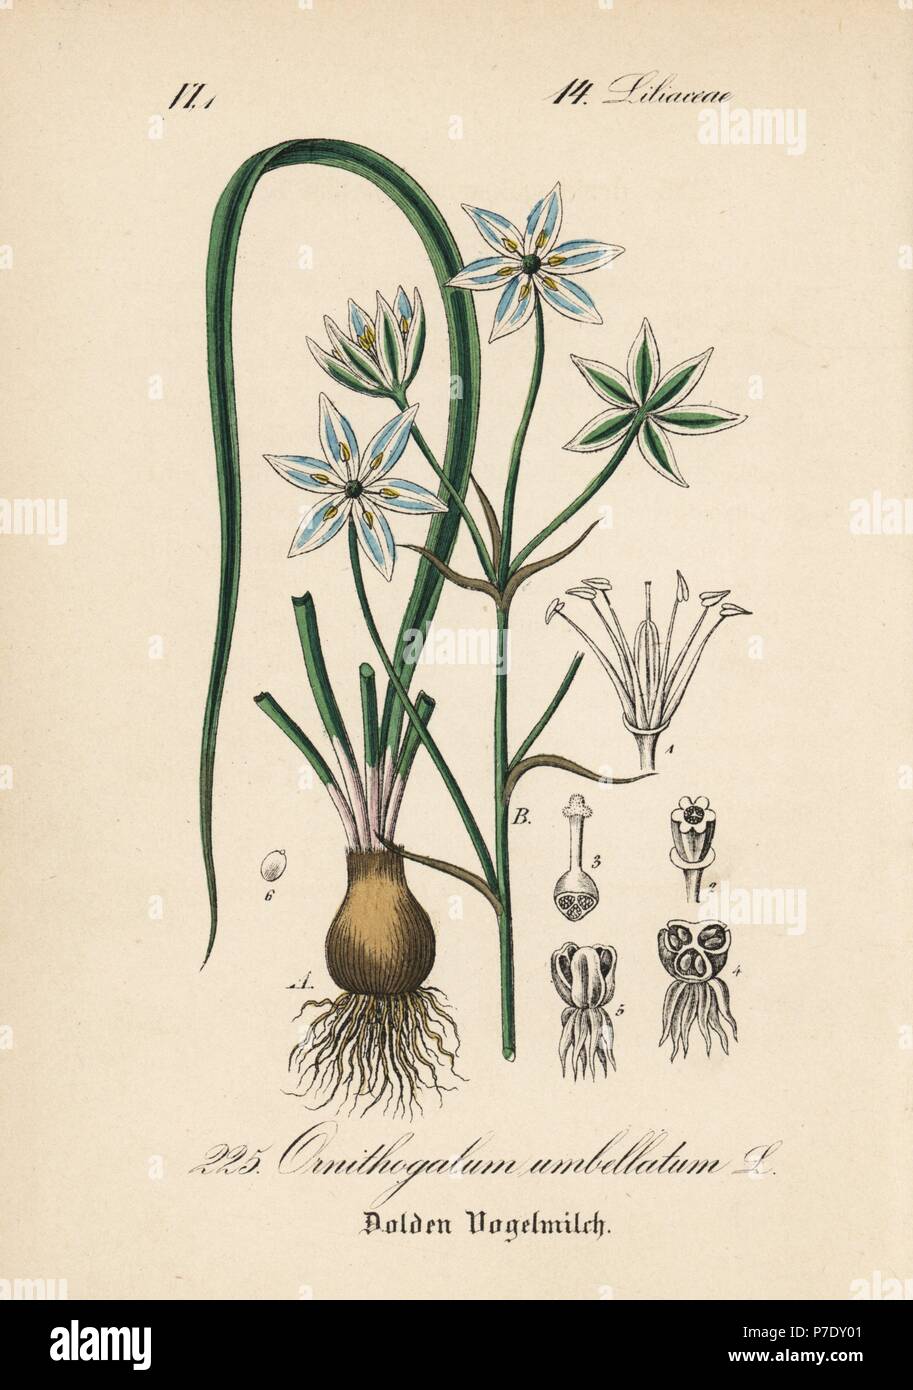 Star of Bethlehem lily, Ornithogalum umbellatum. Handcoloured lithograph from Diederich von Schlechtendal's German Flora (Flora von Deutschland), Jena, 1871. Stock Photo